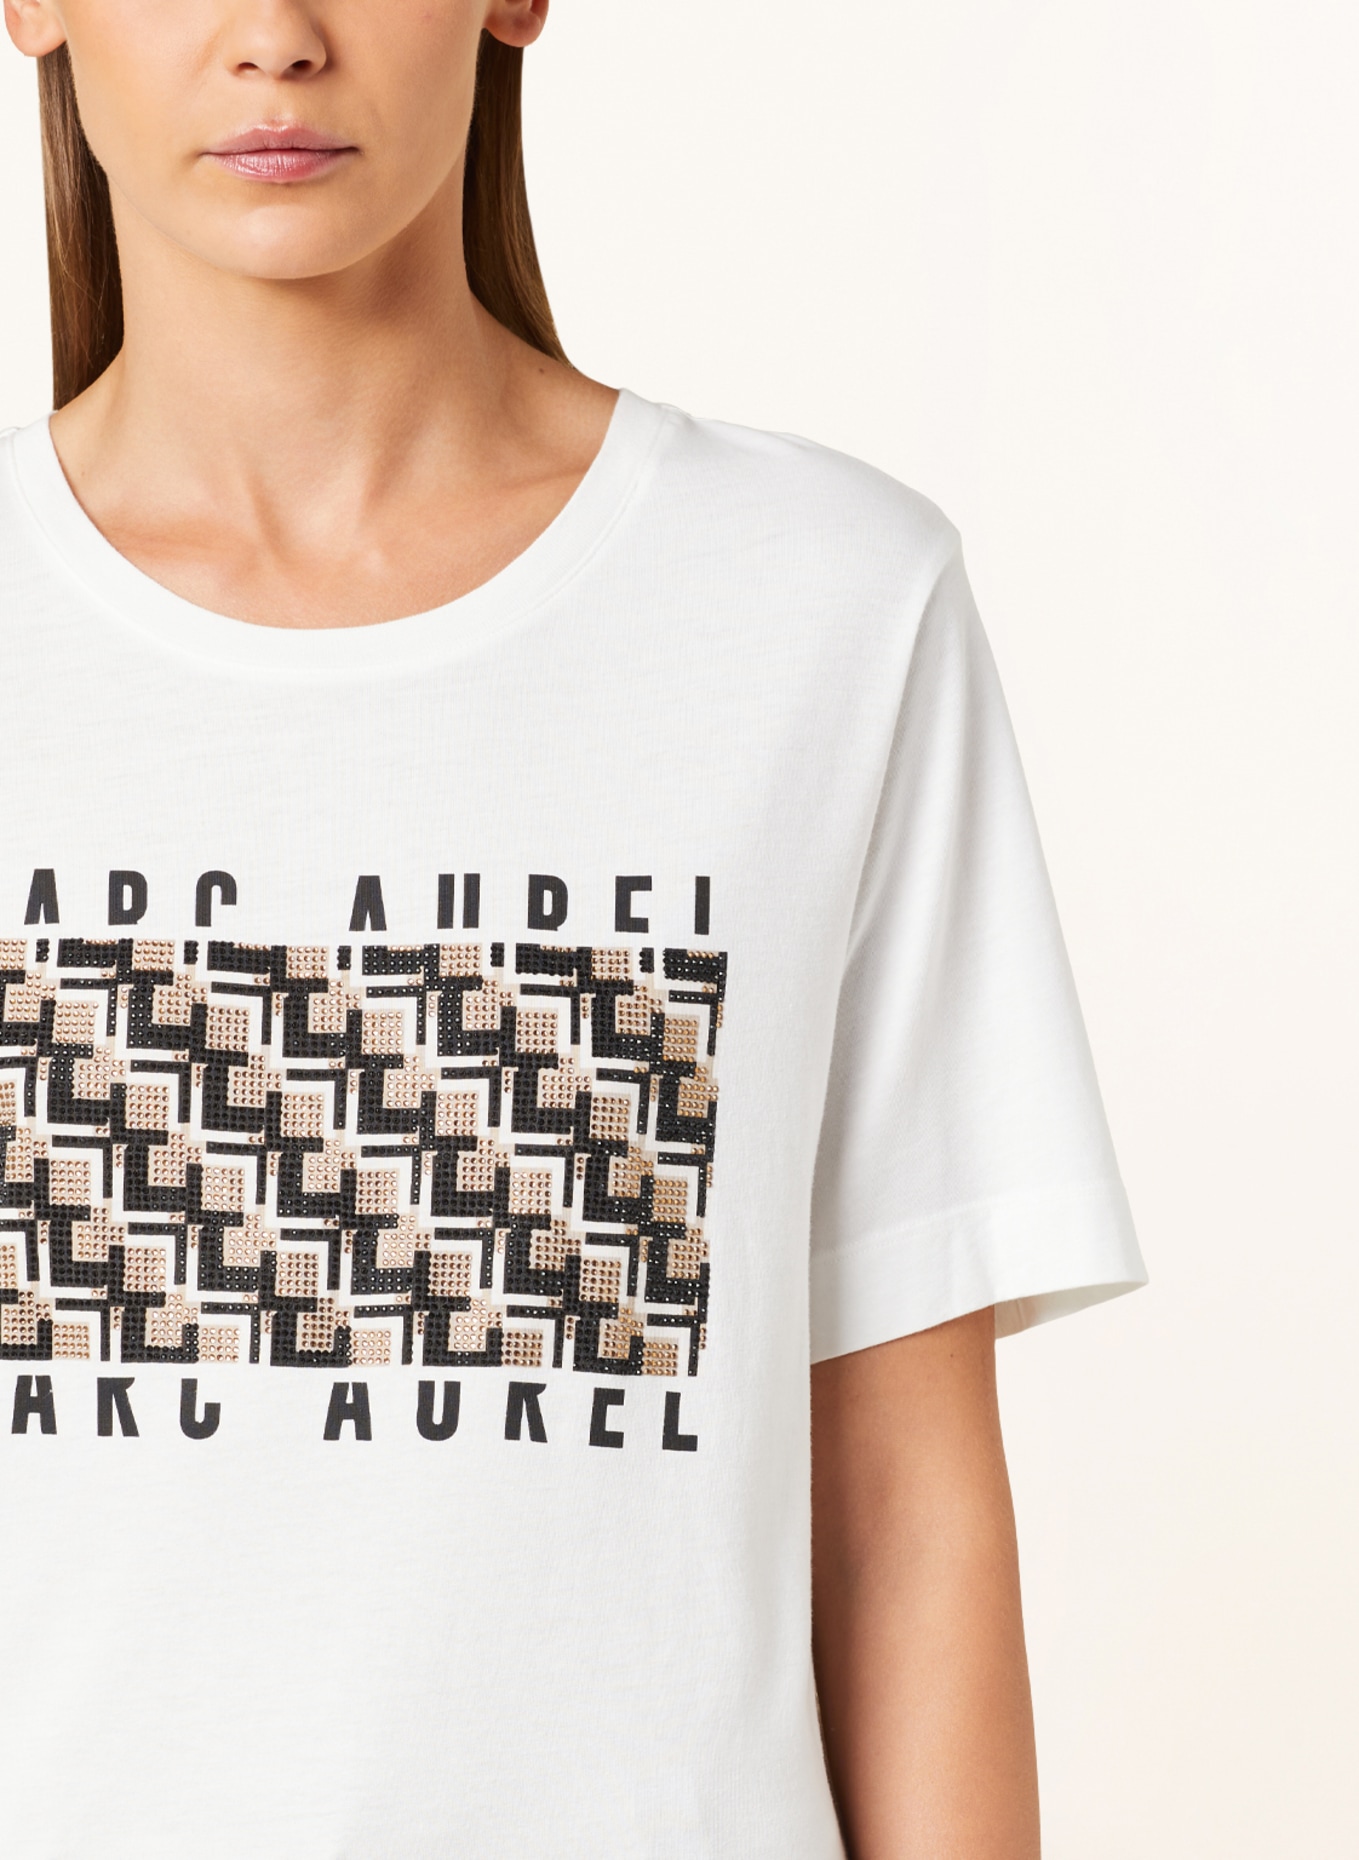 MARC AUREL T-shirt with decorative gems, Color: WHITE (Image 4)